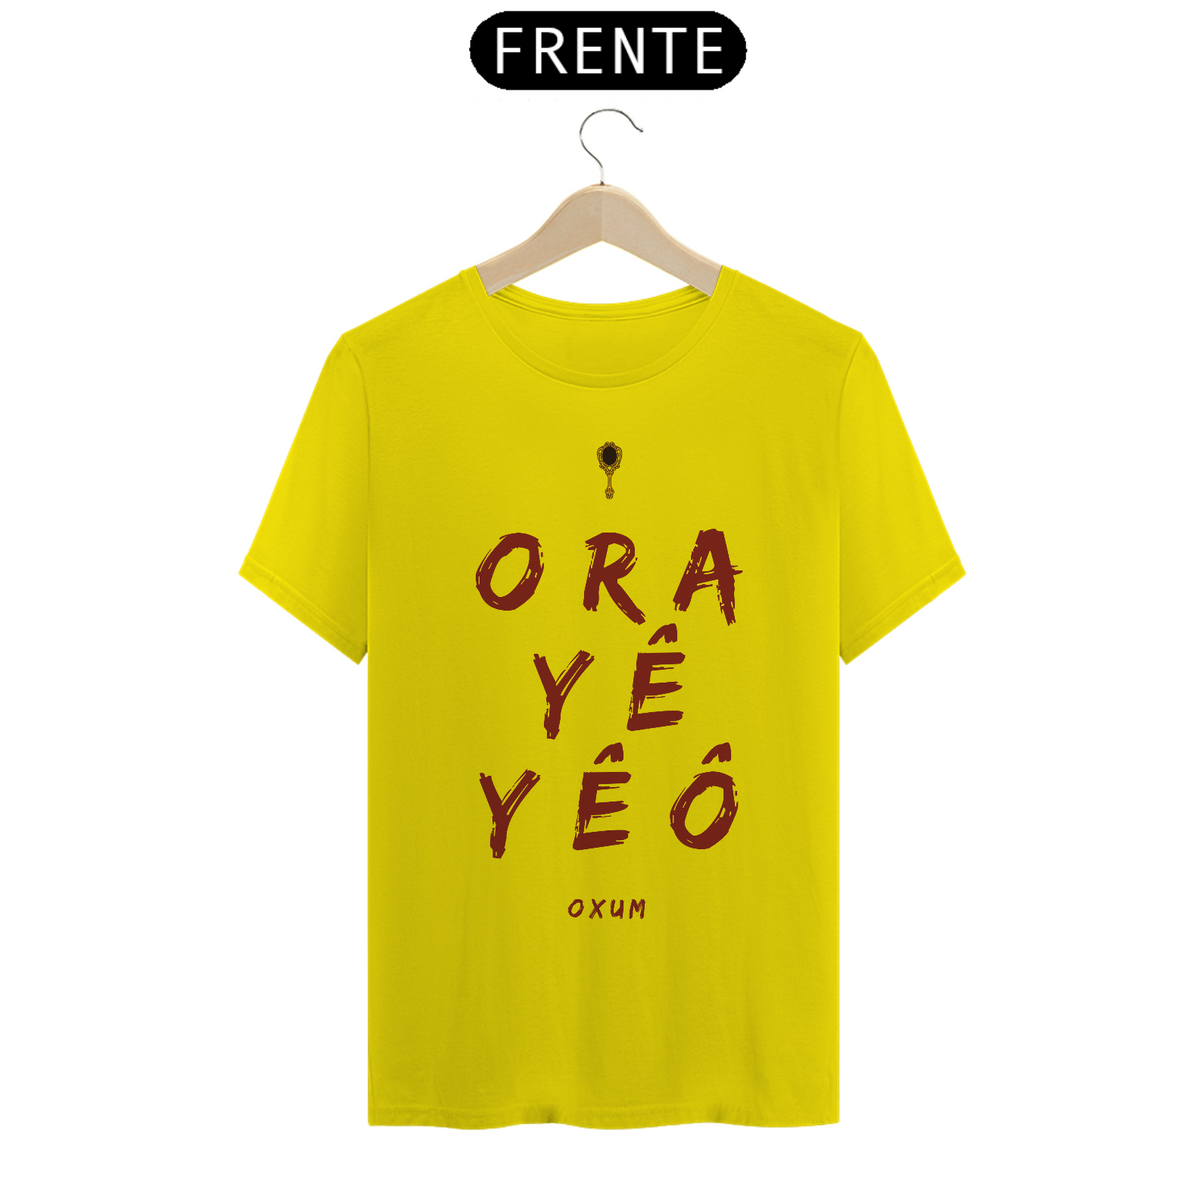 Nome do produto: Camiseta Masculina Osun Oxum - Saudação Òóré Yéyé Osun 100% Algodão Fio 24.1, 145g costura simples e gola ribana